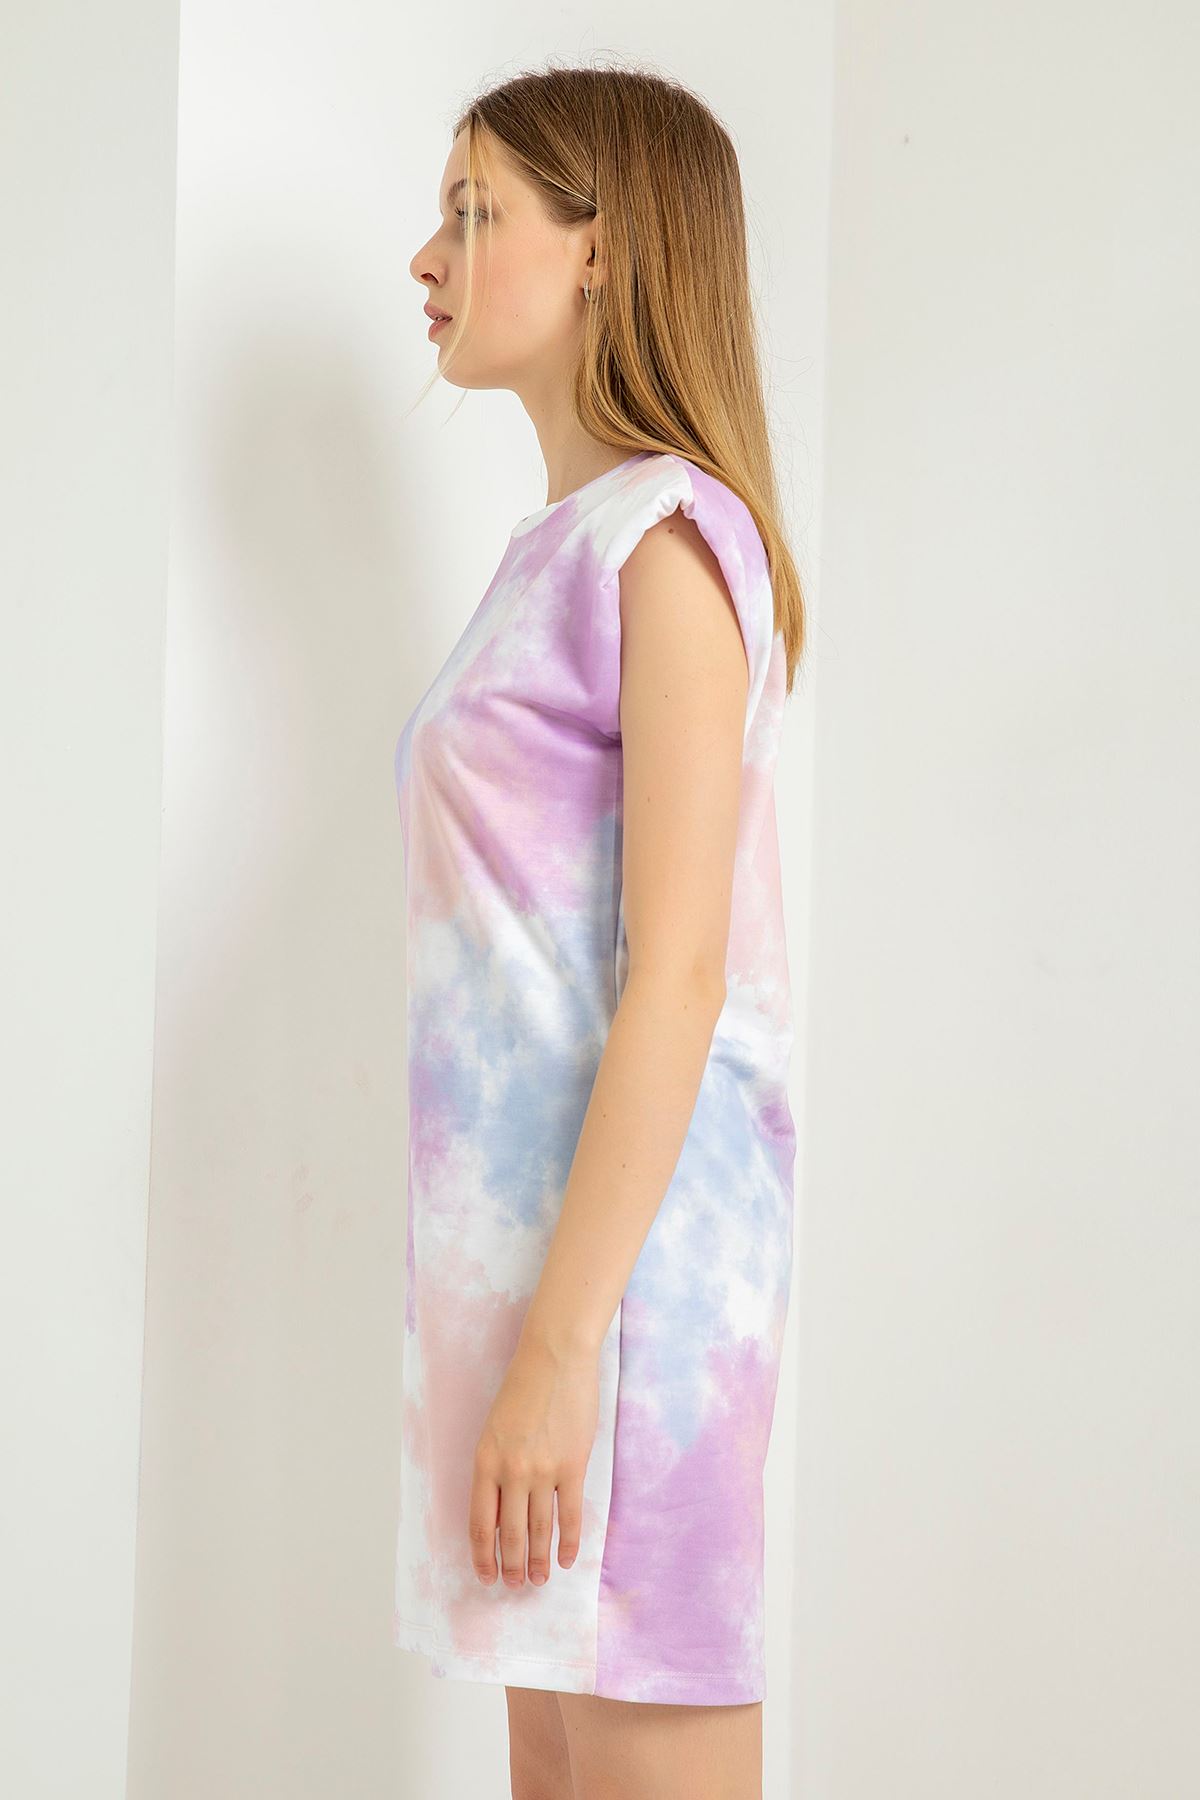 Knit Fabric Full Fit Cloud Print Stuffed Women Dress - Lilac